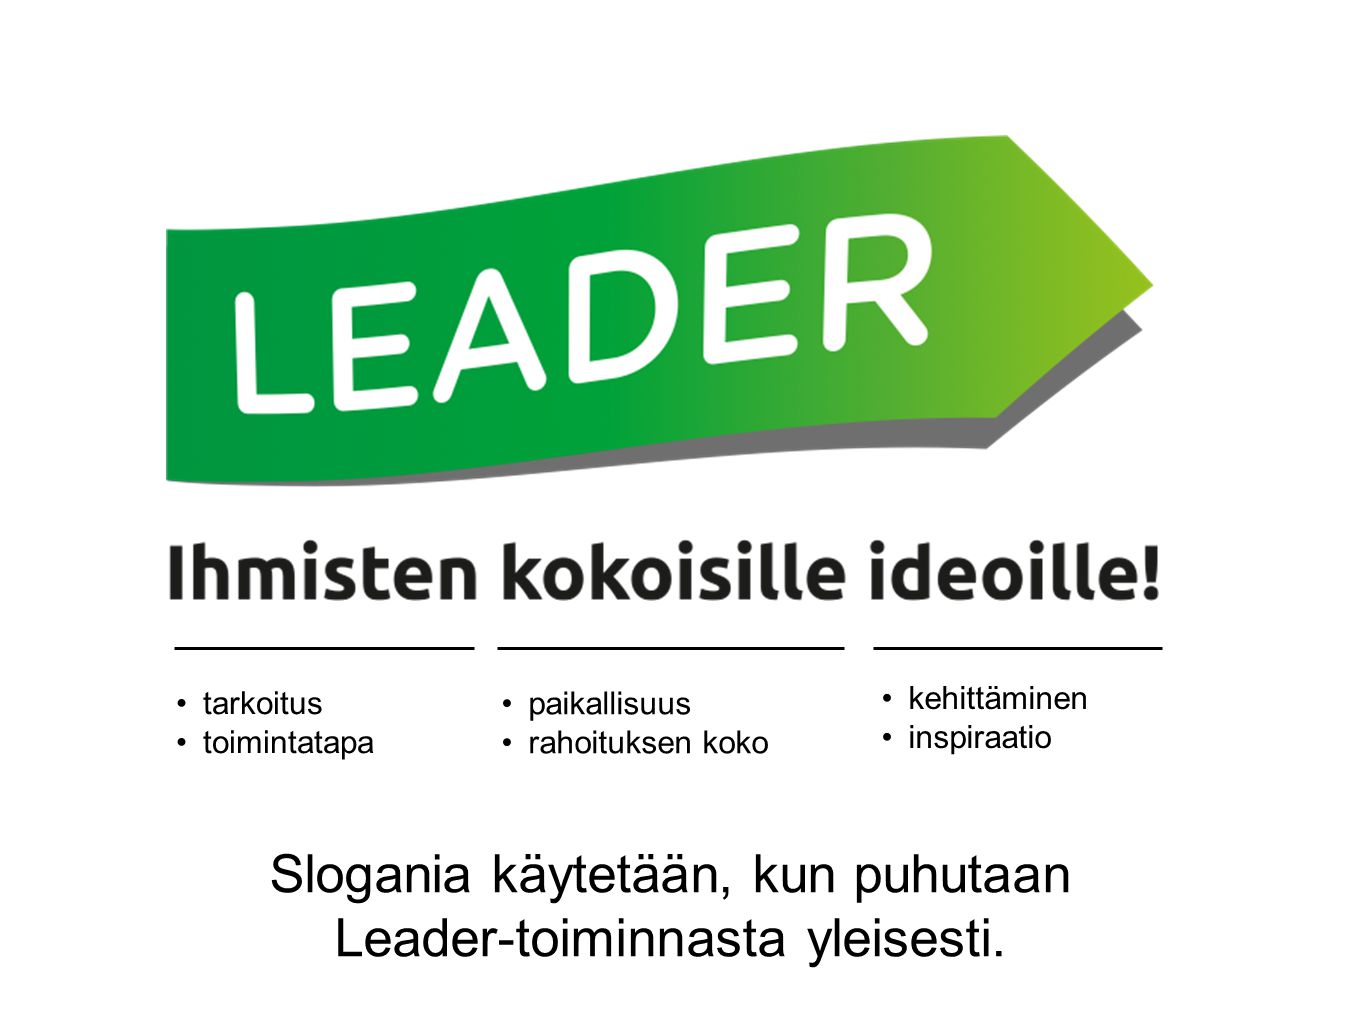 Slogania käytetään, kun puhutaan Leader-toiminnasta yleisesti.